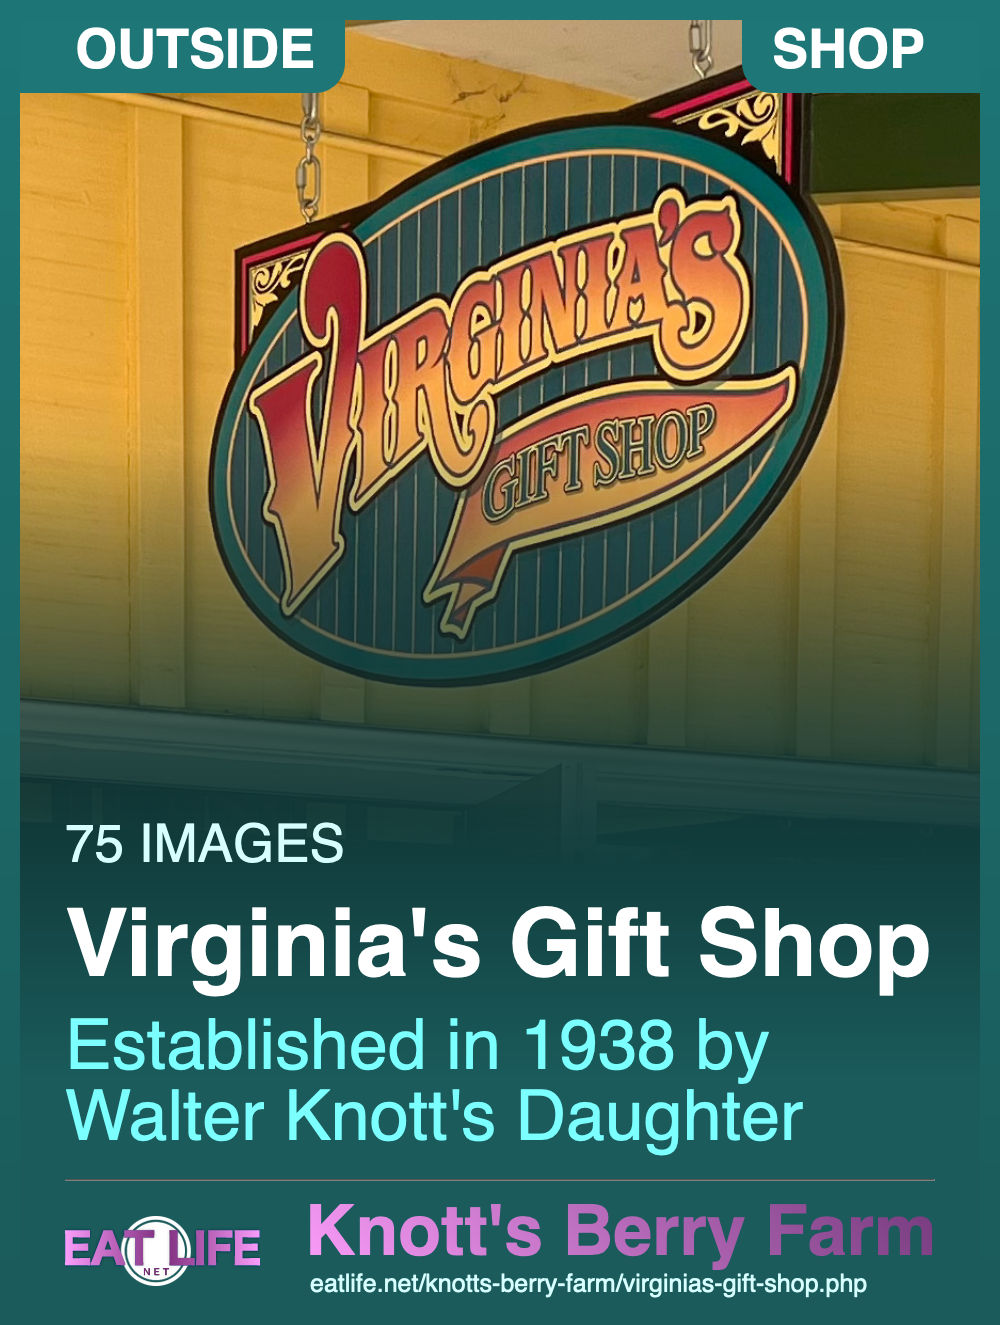 Virginia's Gift Shop